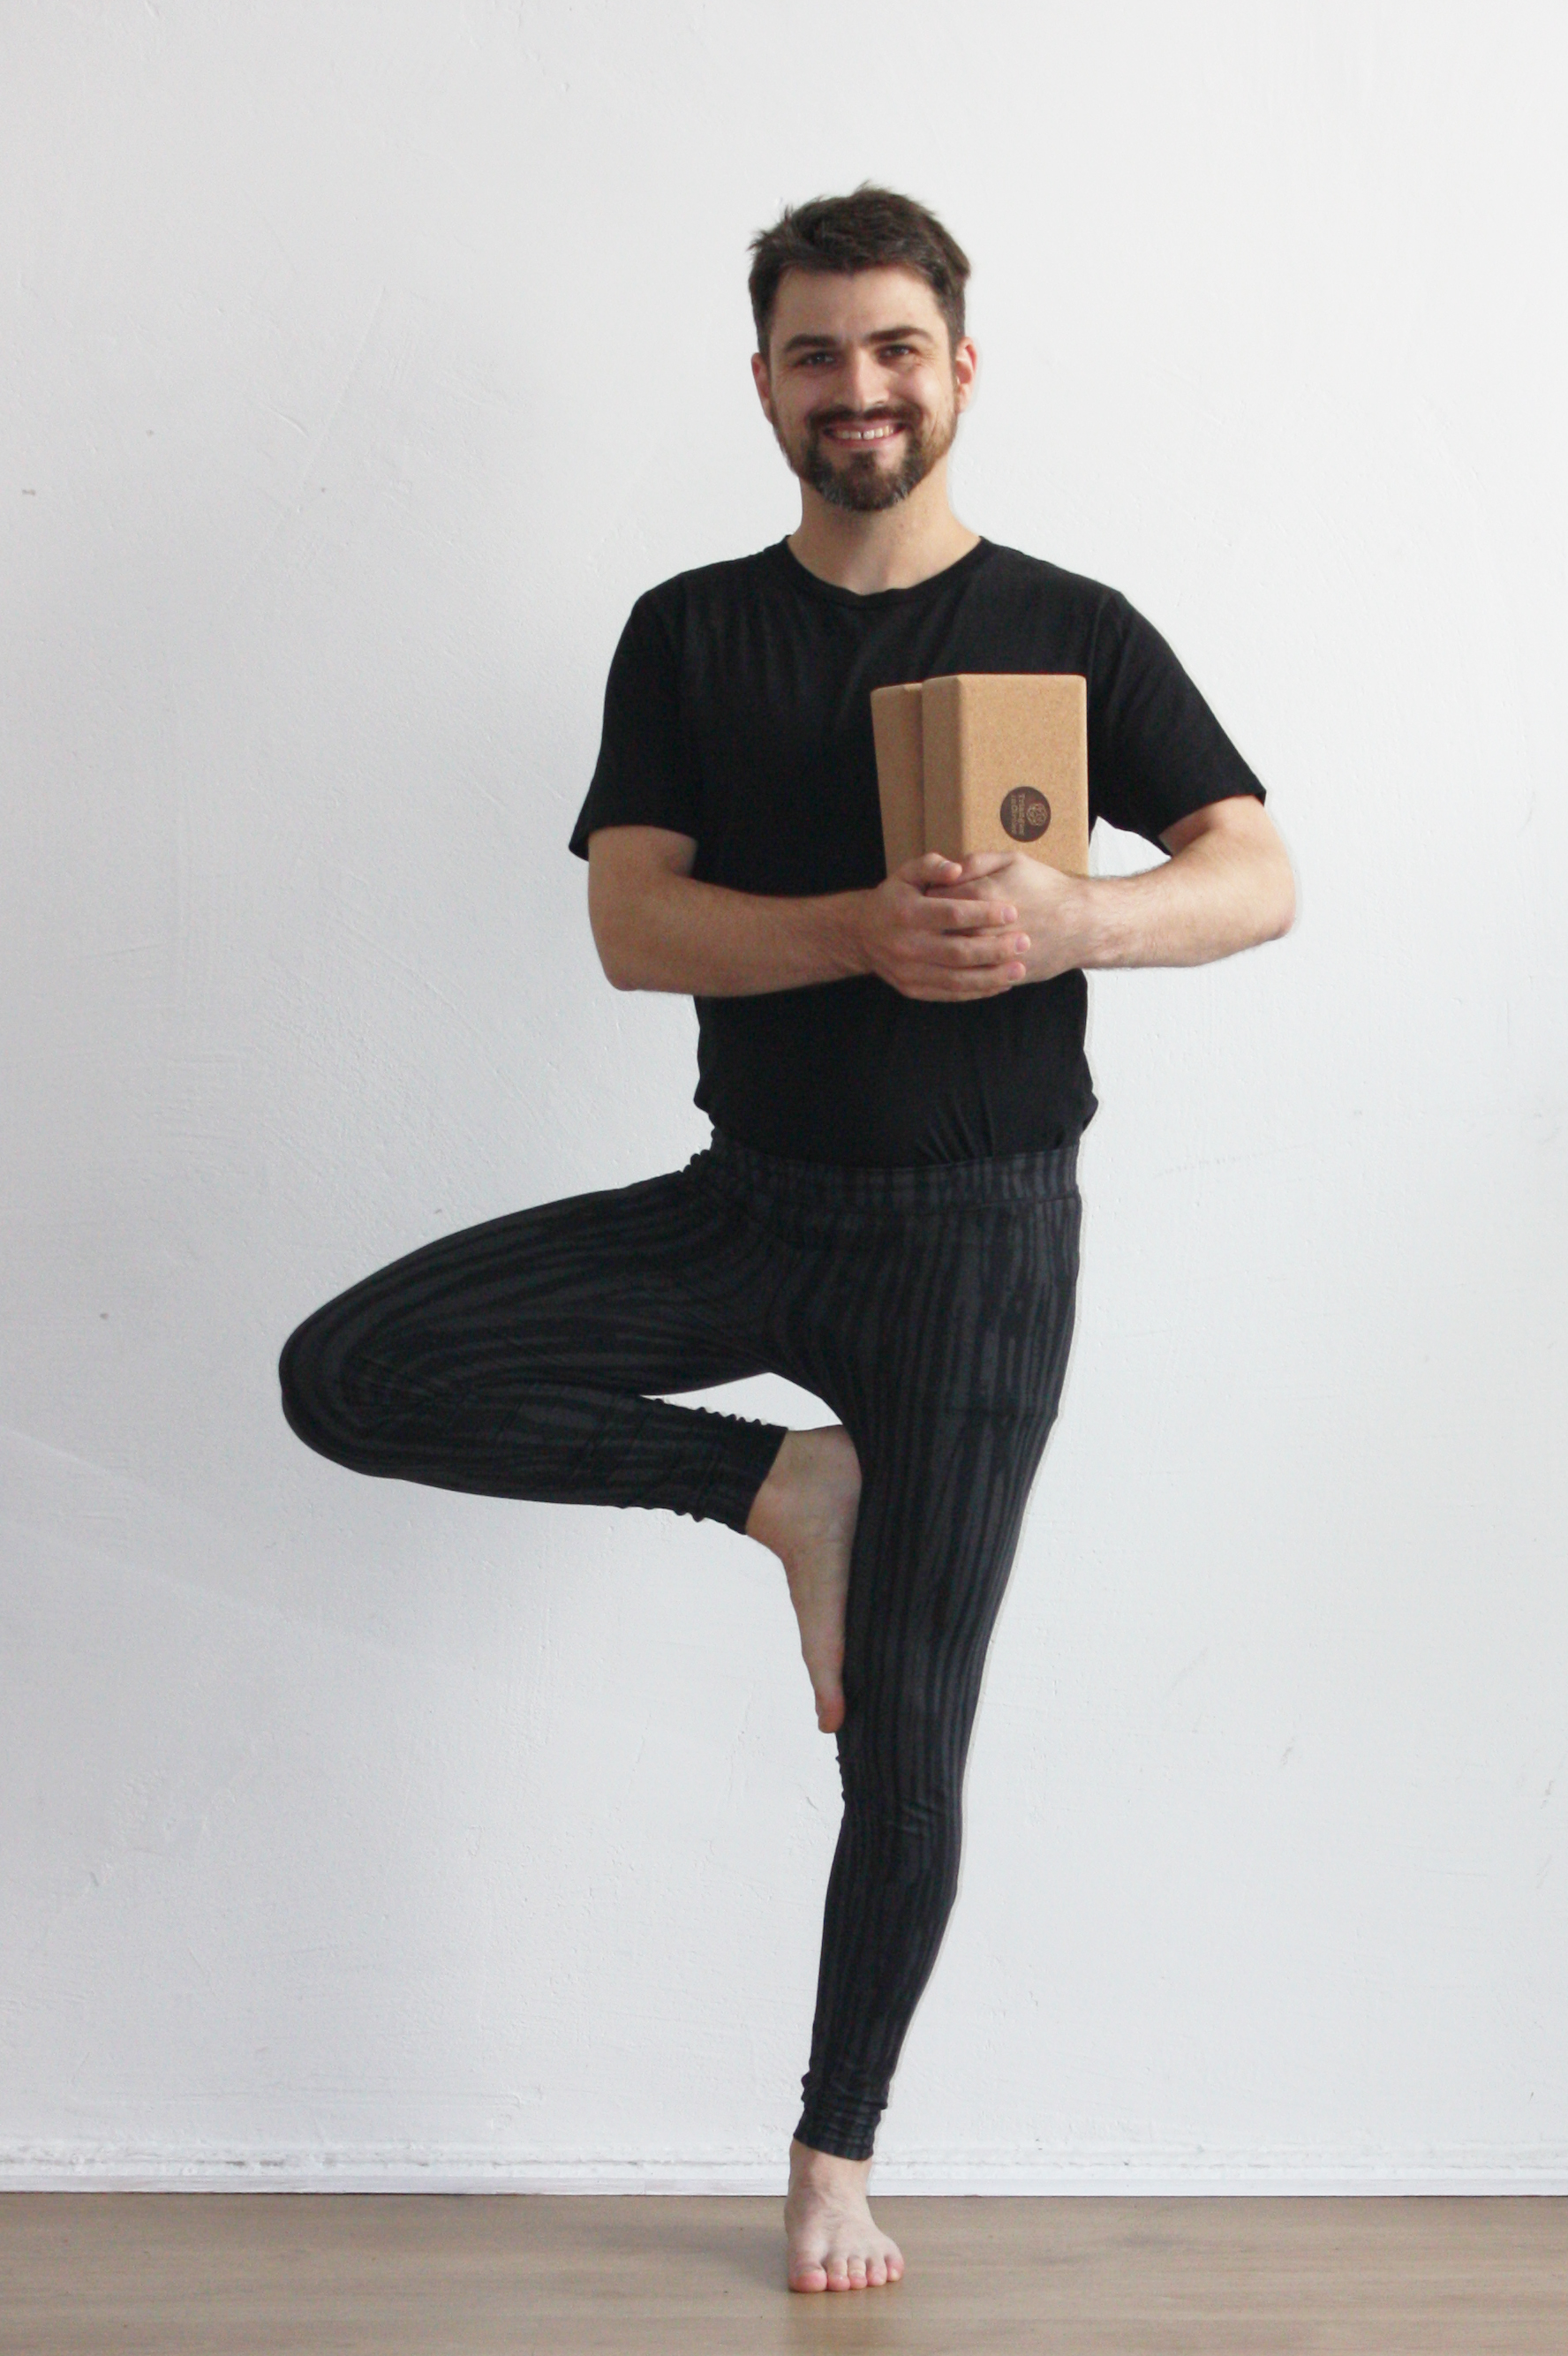 Stefan Nietert mit Cork Yogablöcken in der Hand